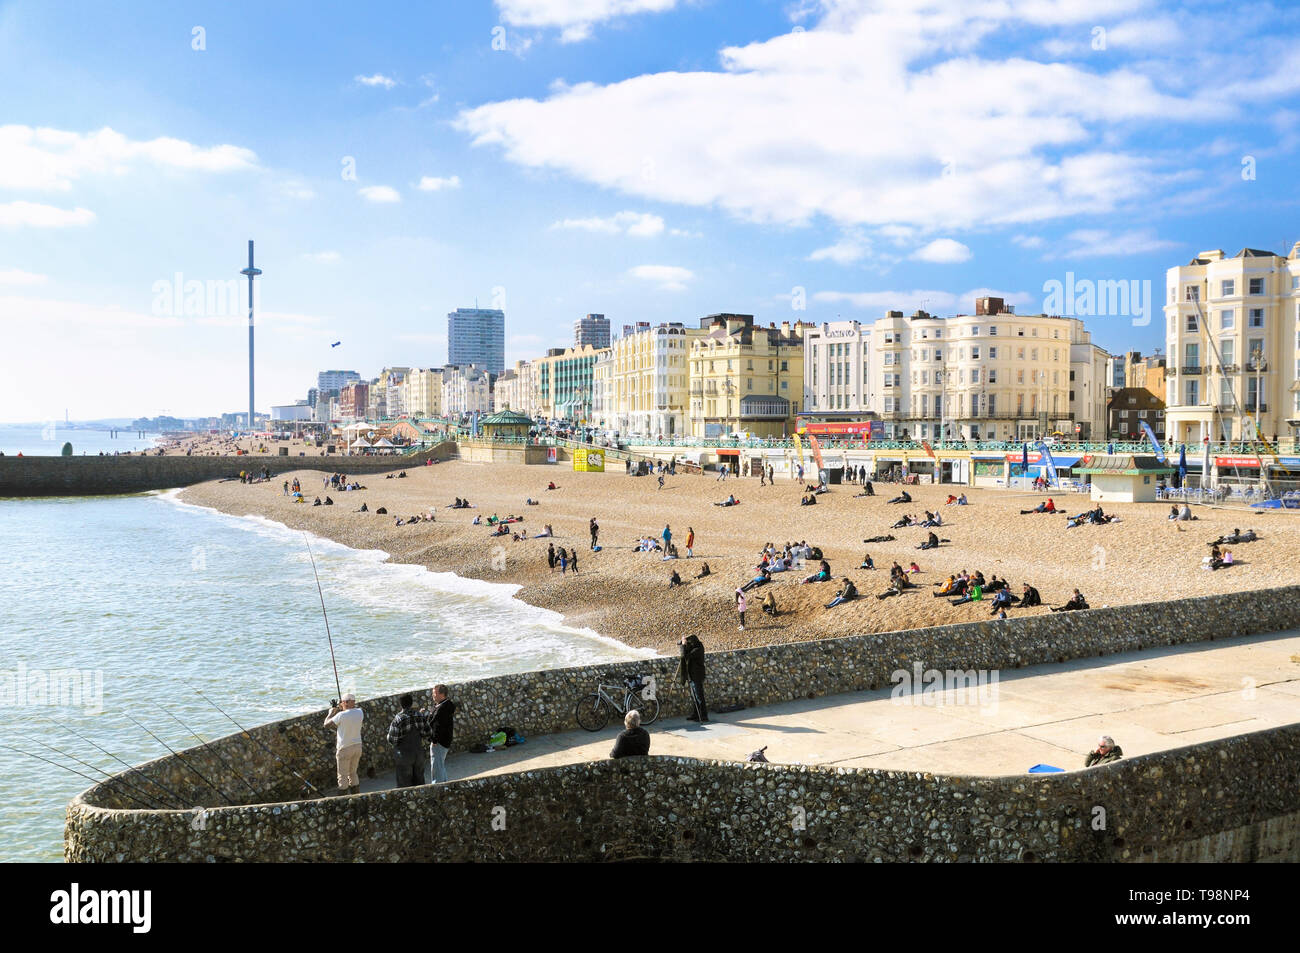 Vue sur la plage de Brighton et les hôtels en bord de mer sur la promenade, vue depuis Palace Pier, Brighton et Hove, East Sussex, Angleterre, Royaume-Uni Banque D'Images